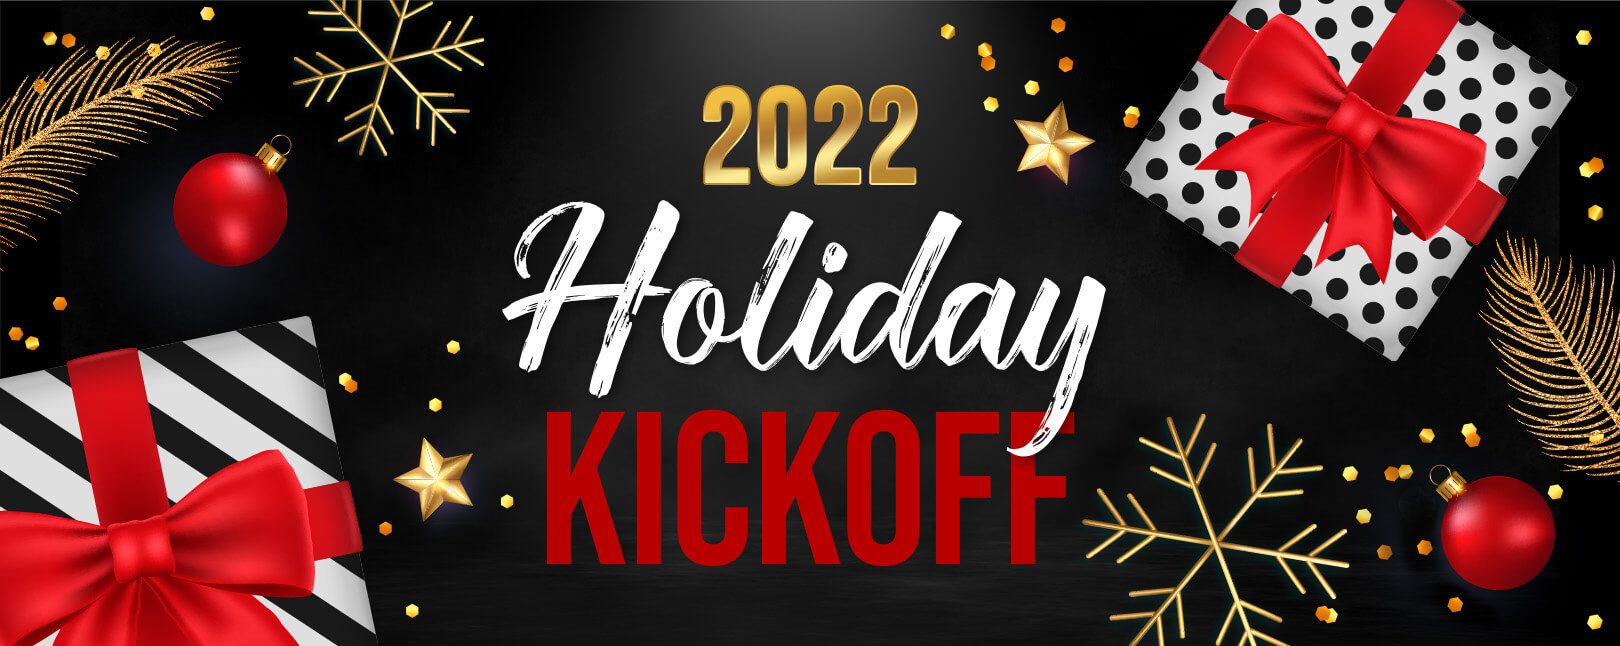 Holiday Kickoff 2022